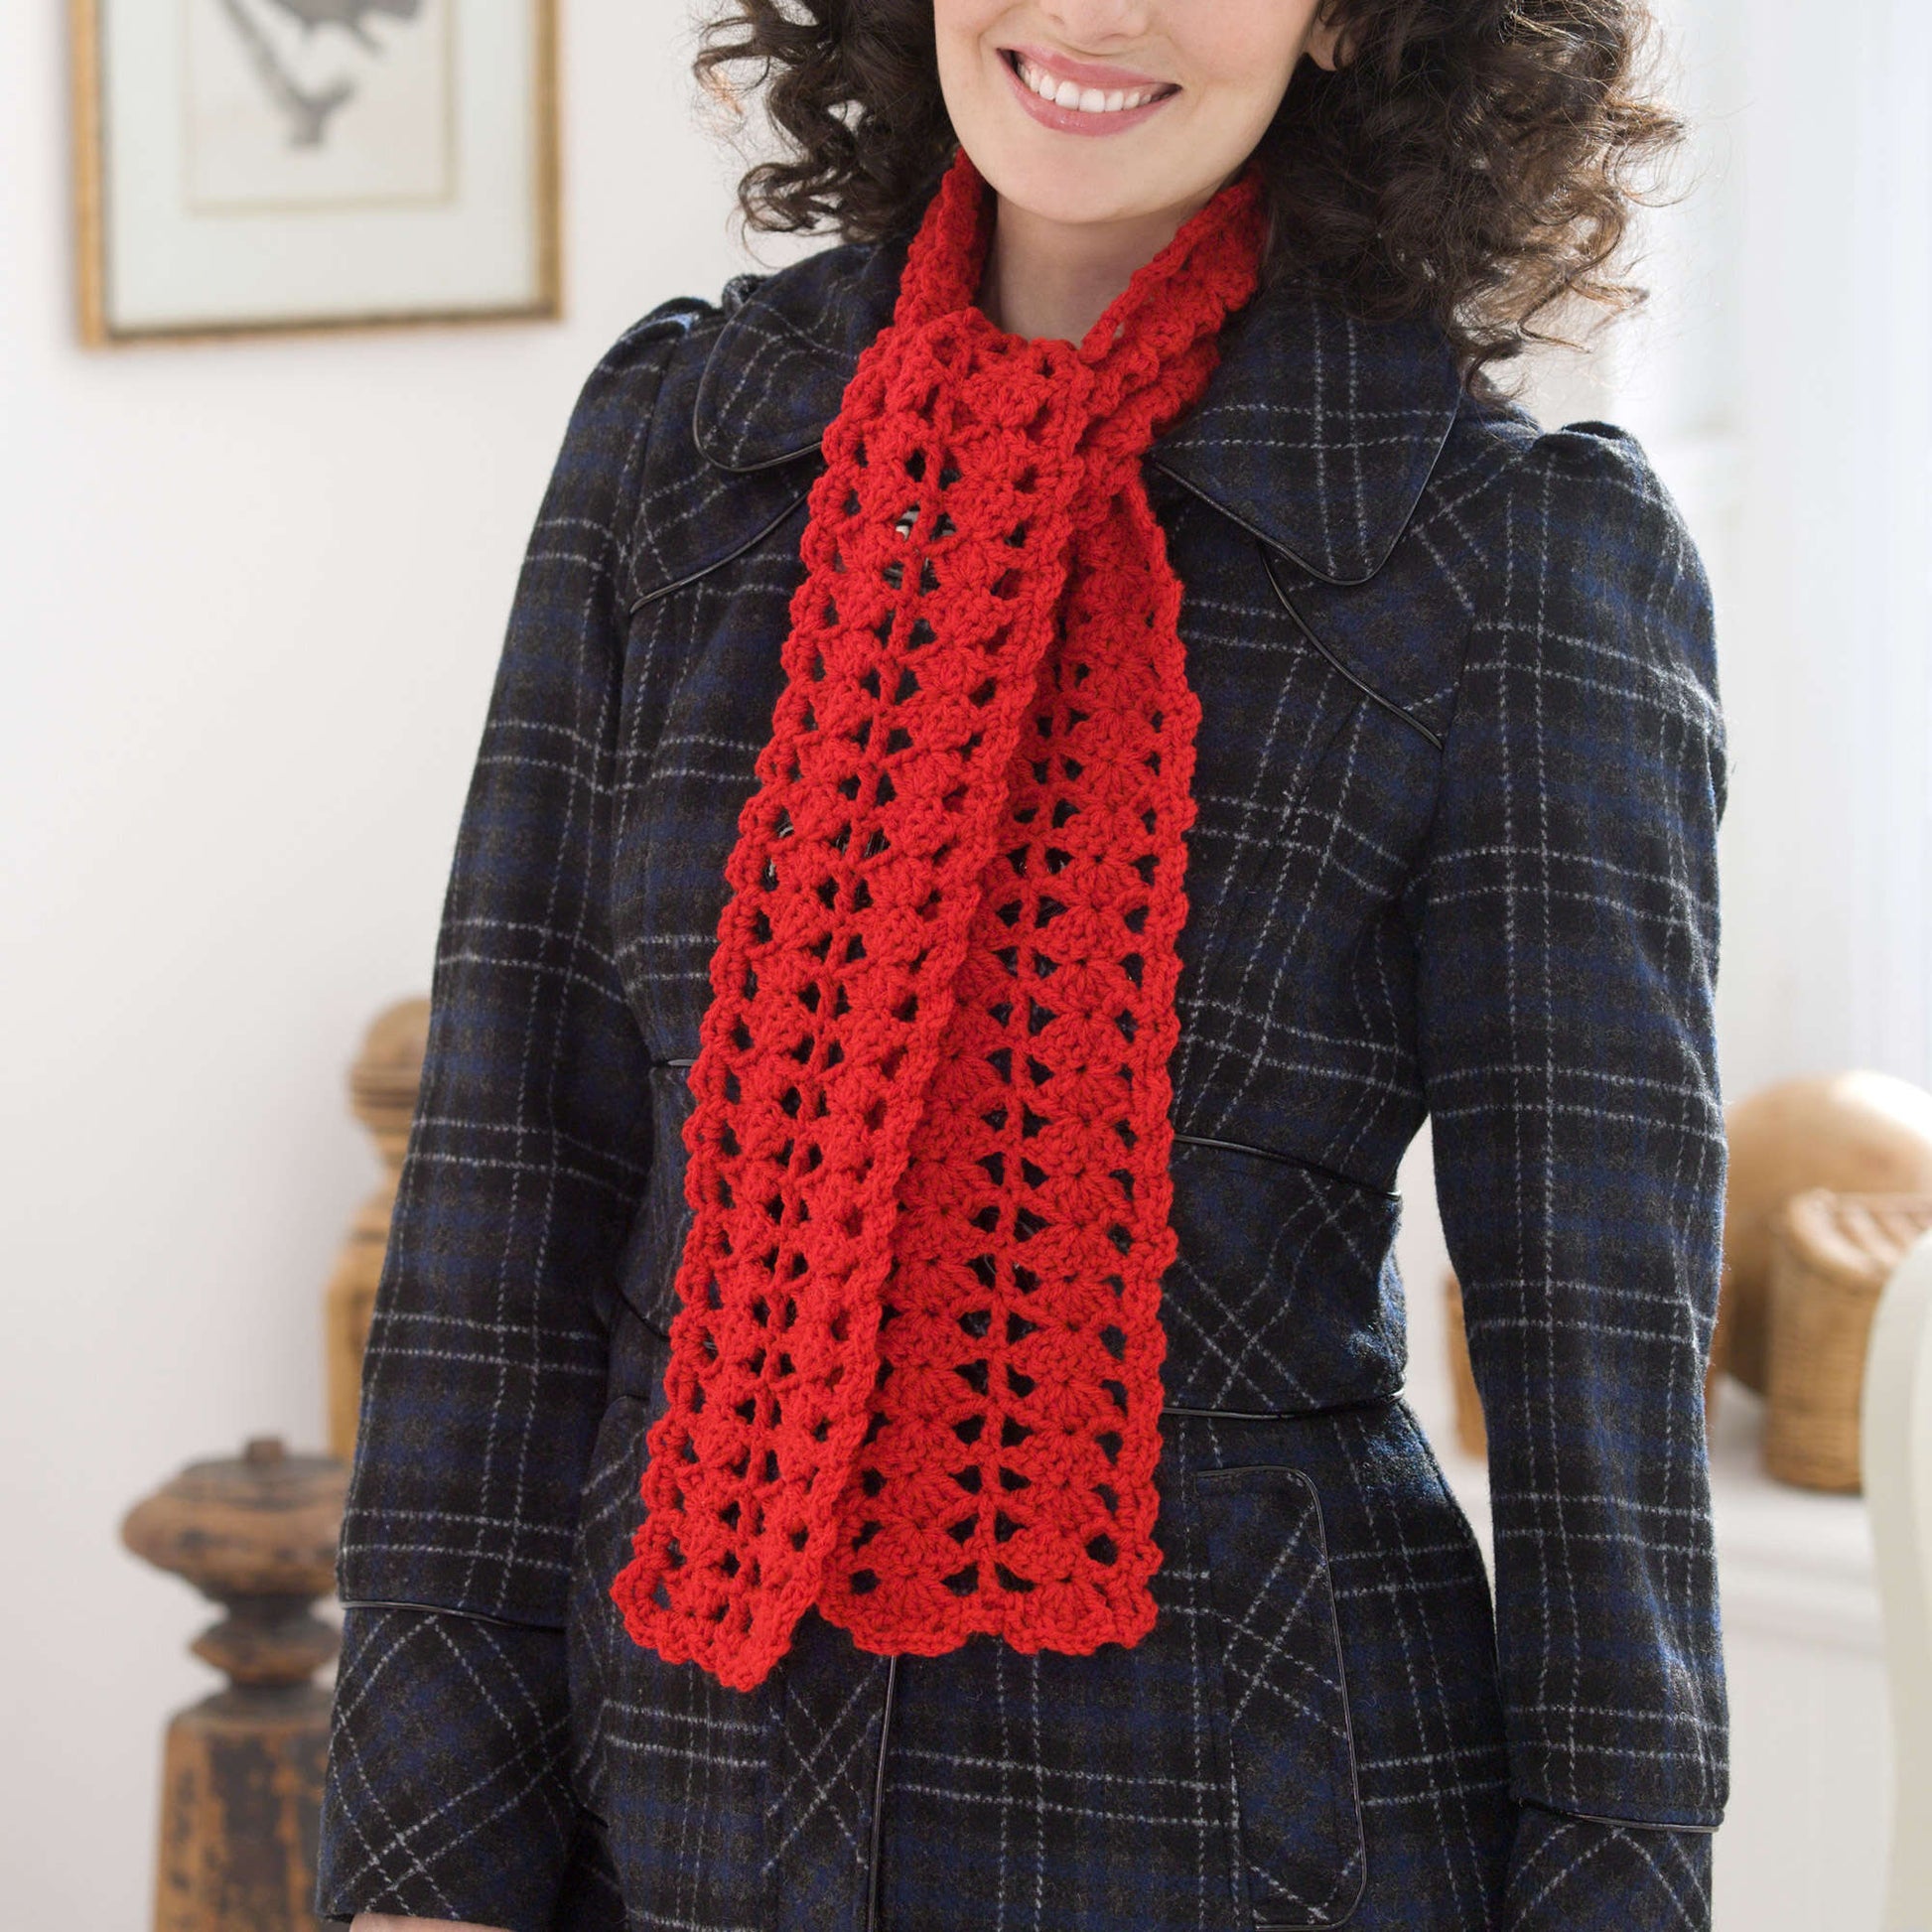 Red Heart Yarn Crochet Patterns - Easy Crochet Patterns